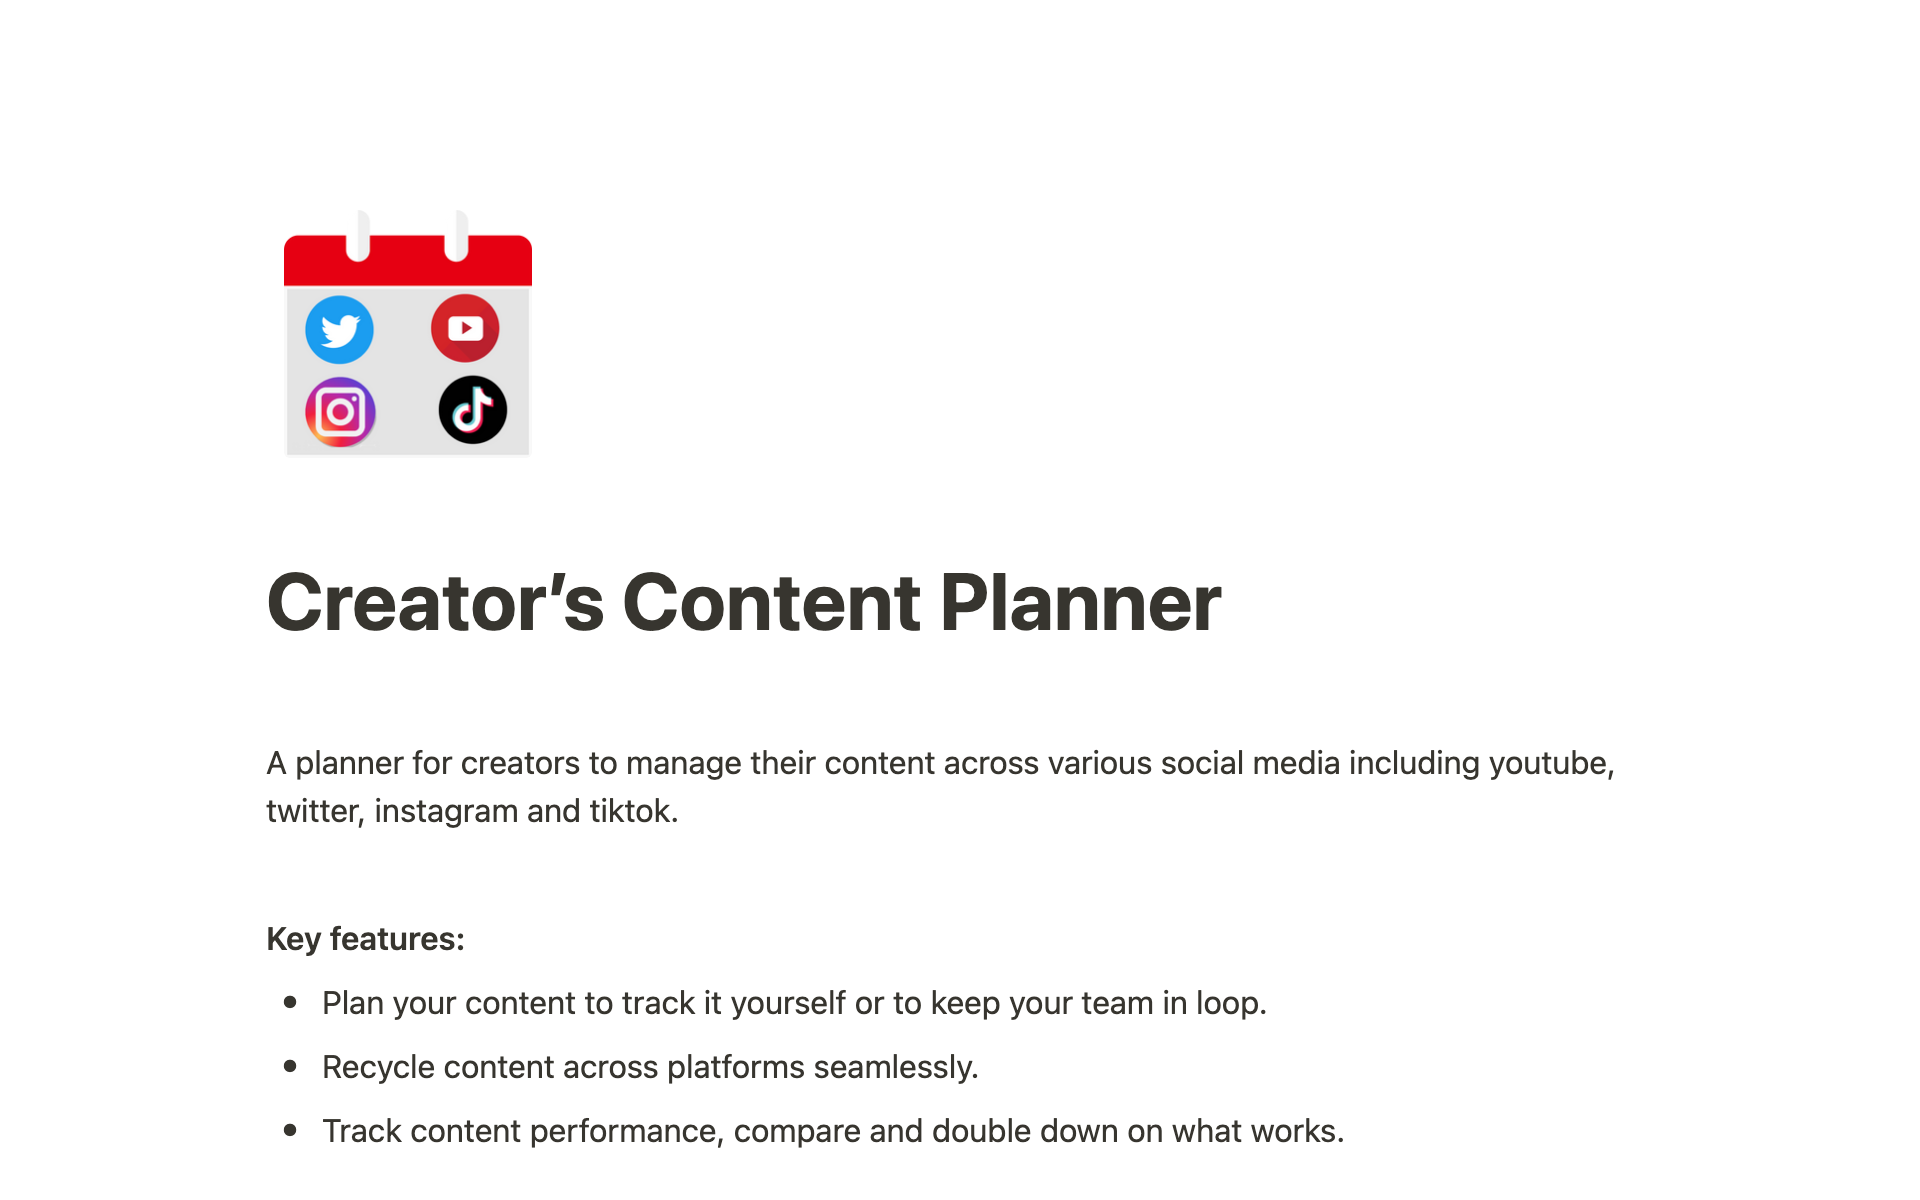 Aperçu du modèle de Creator's Content Planner